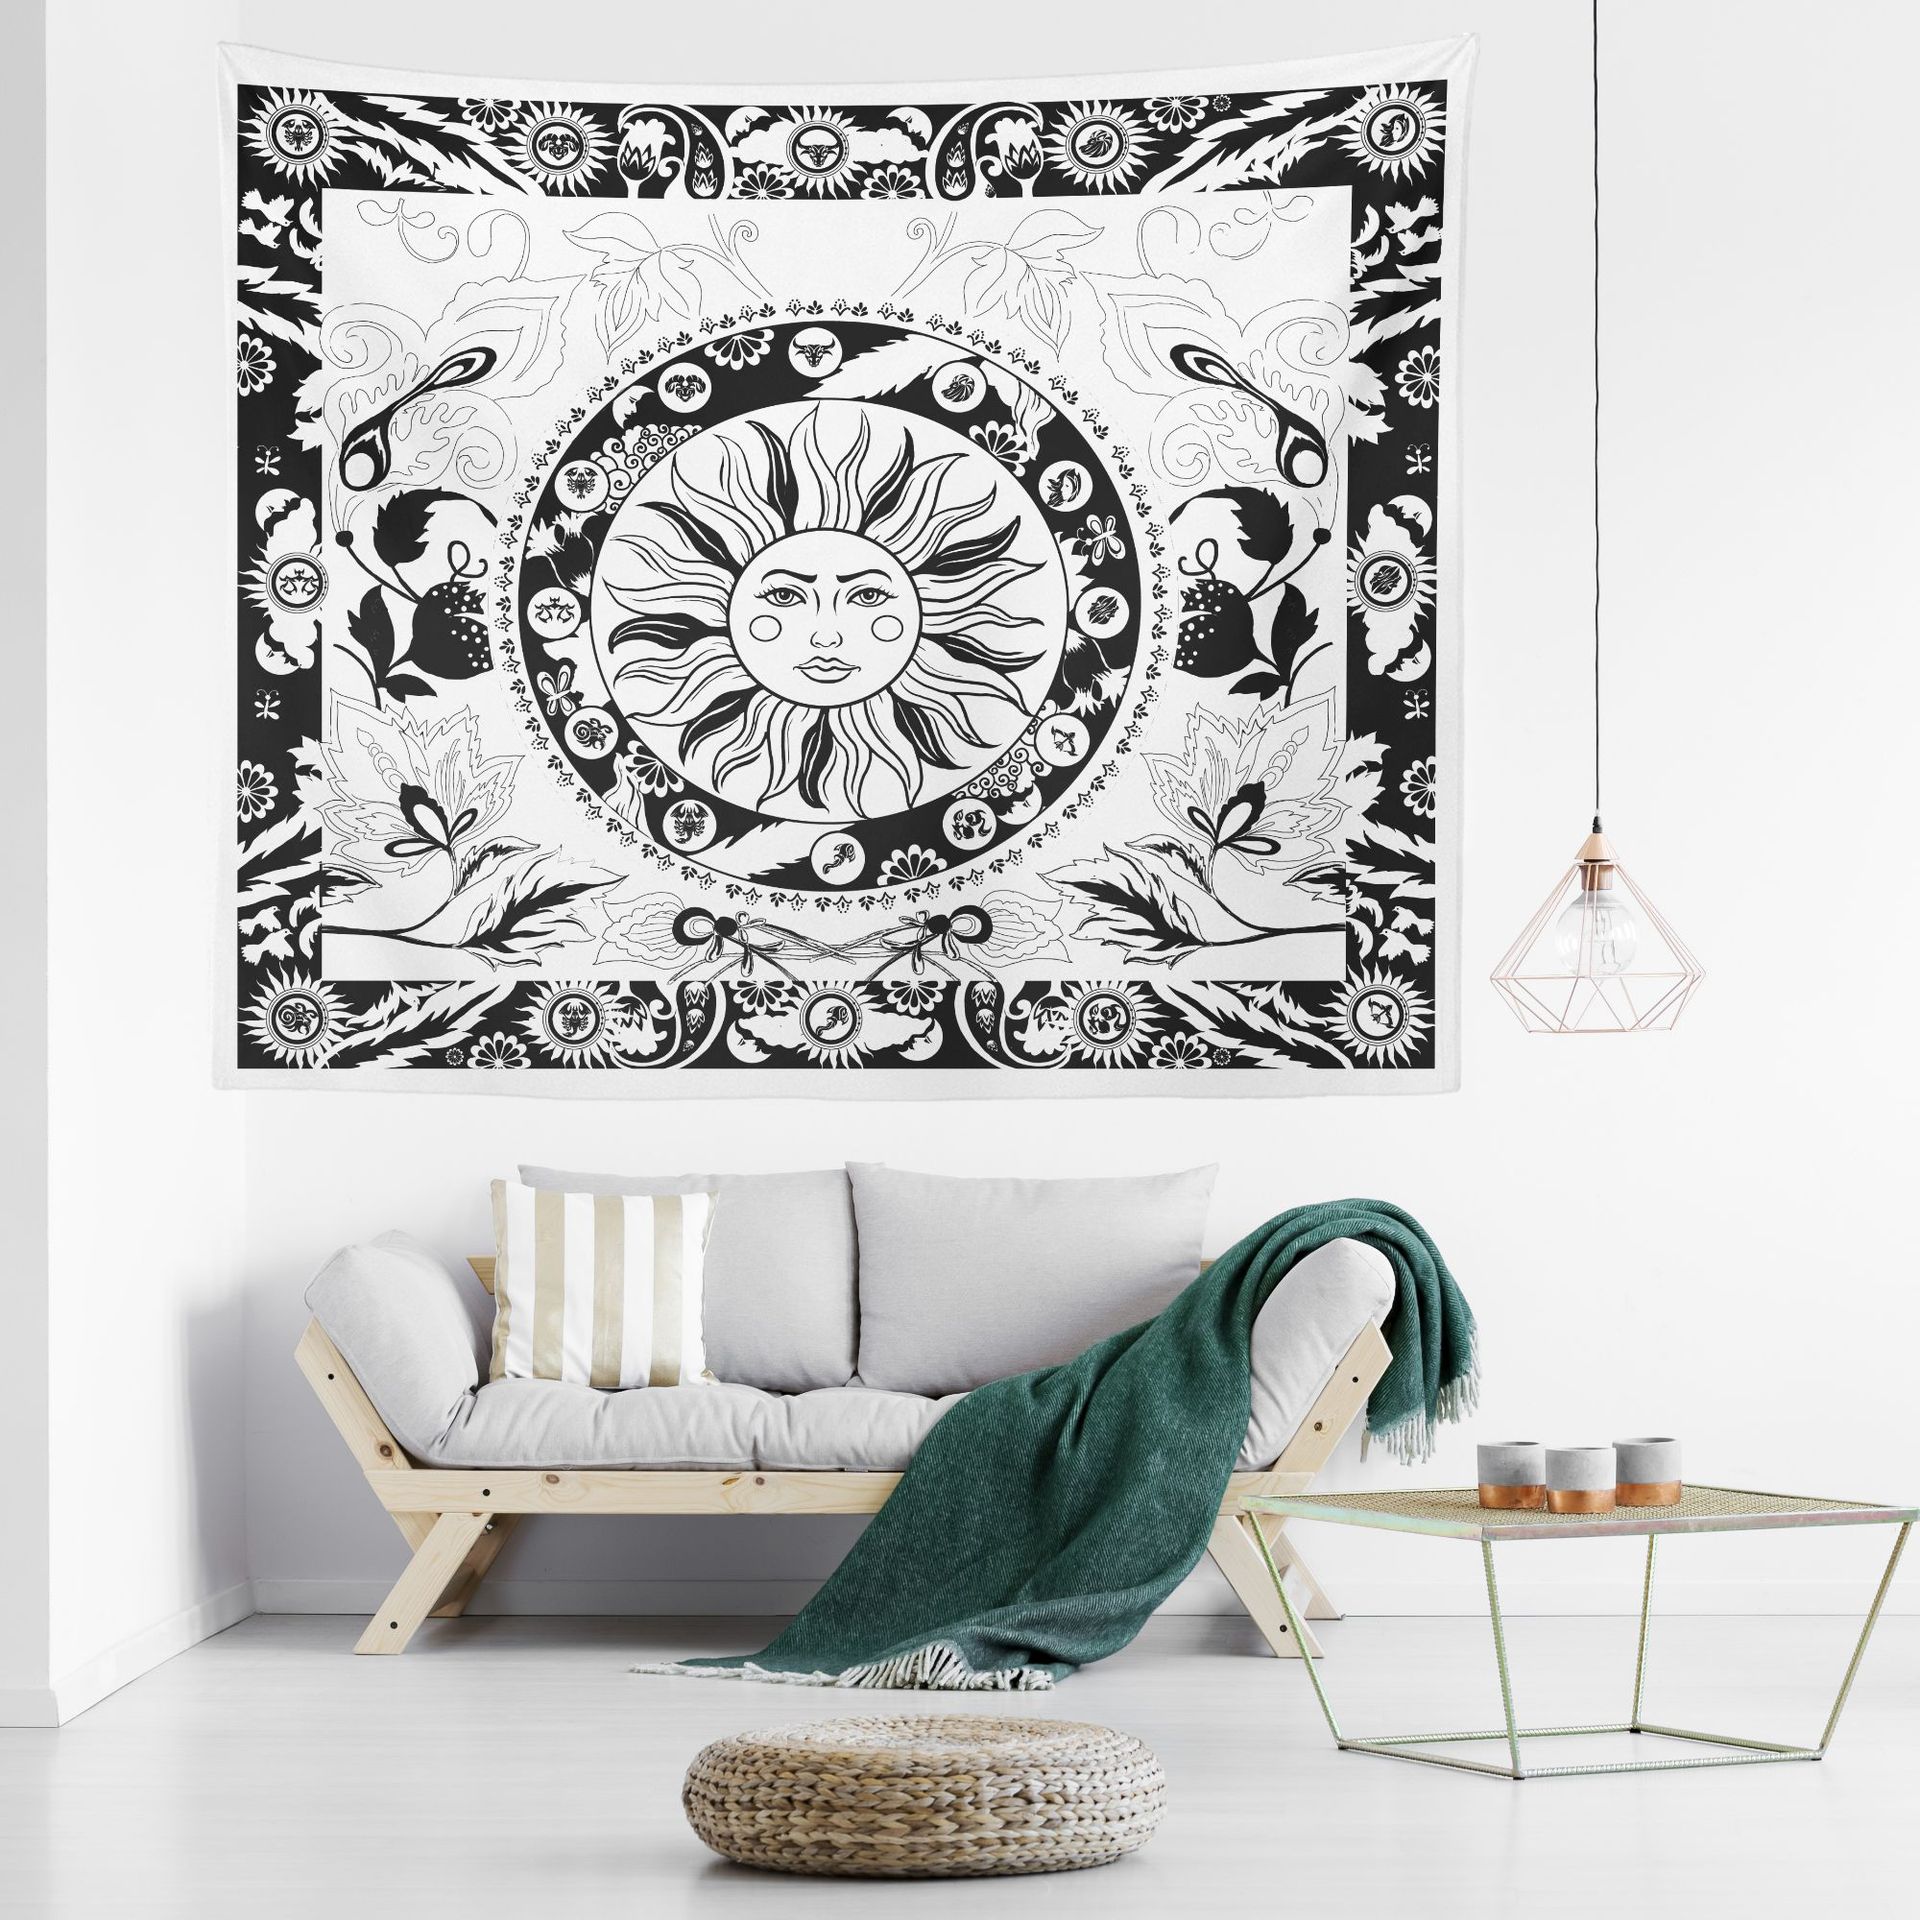 欧美风格黑白抽象太阳人脸花朵叶子客厅挂毯 卧室挂画